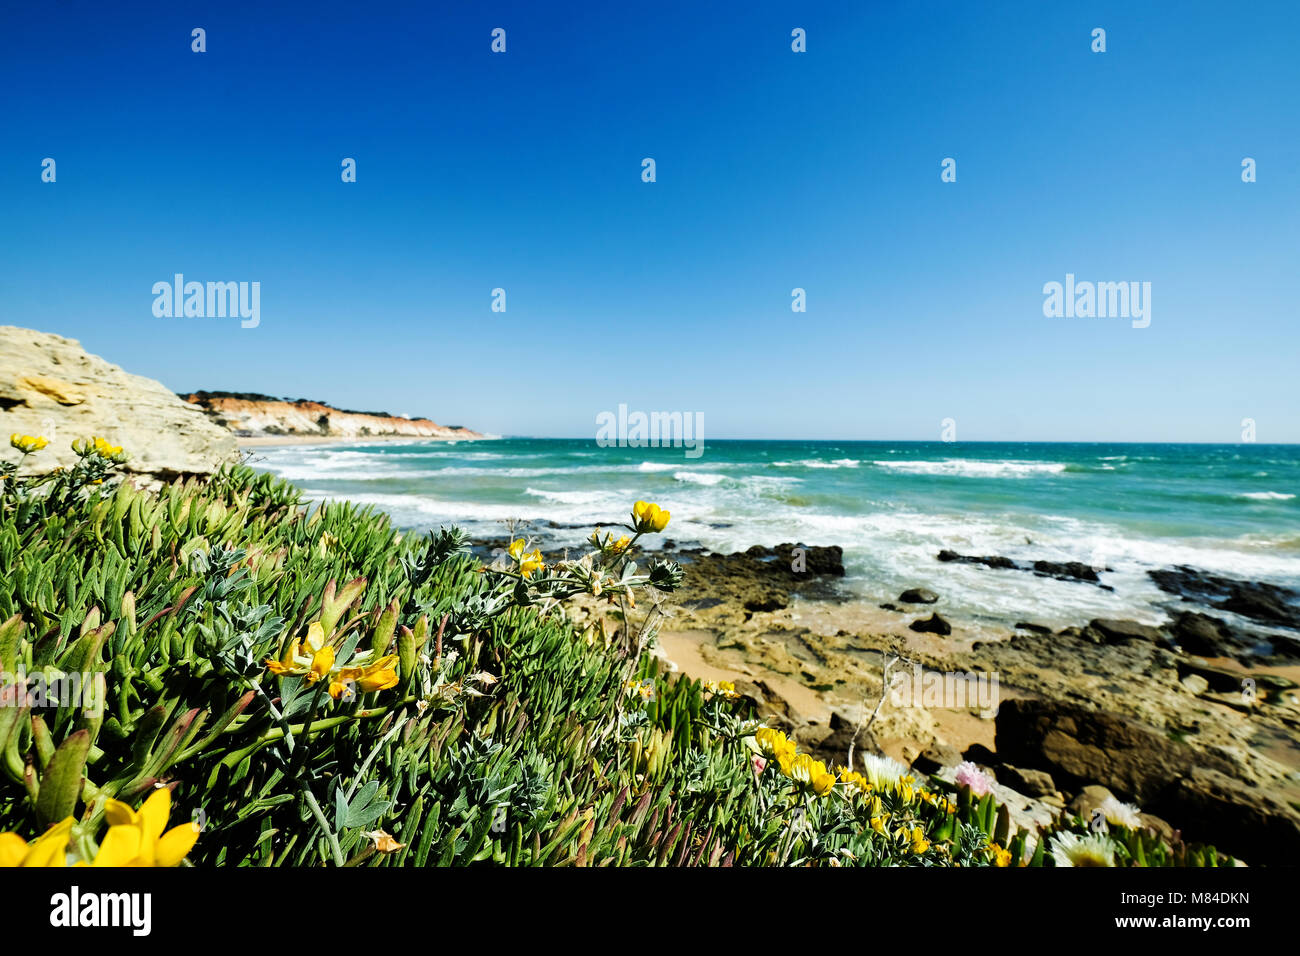 Blick auf die Landschaft mit Felsen und Dünen am Strand in der Nähe von Albufeira Portugal im Sommer mit lokalen Vegetation Blumen und Pflanzen Stockfoto